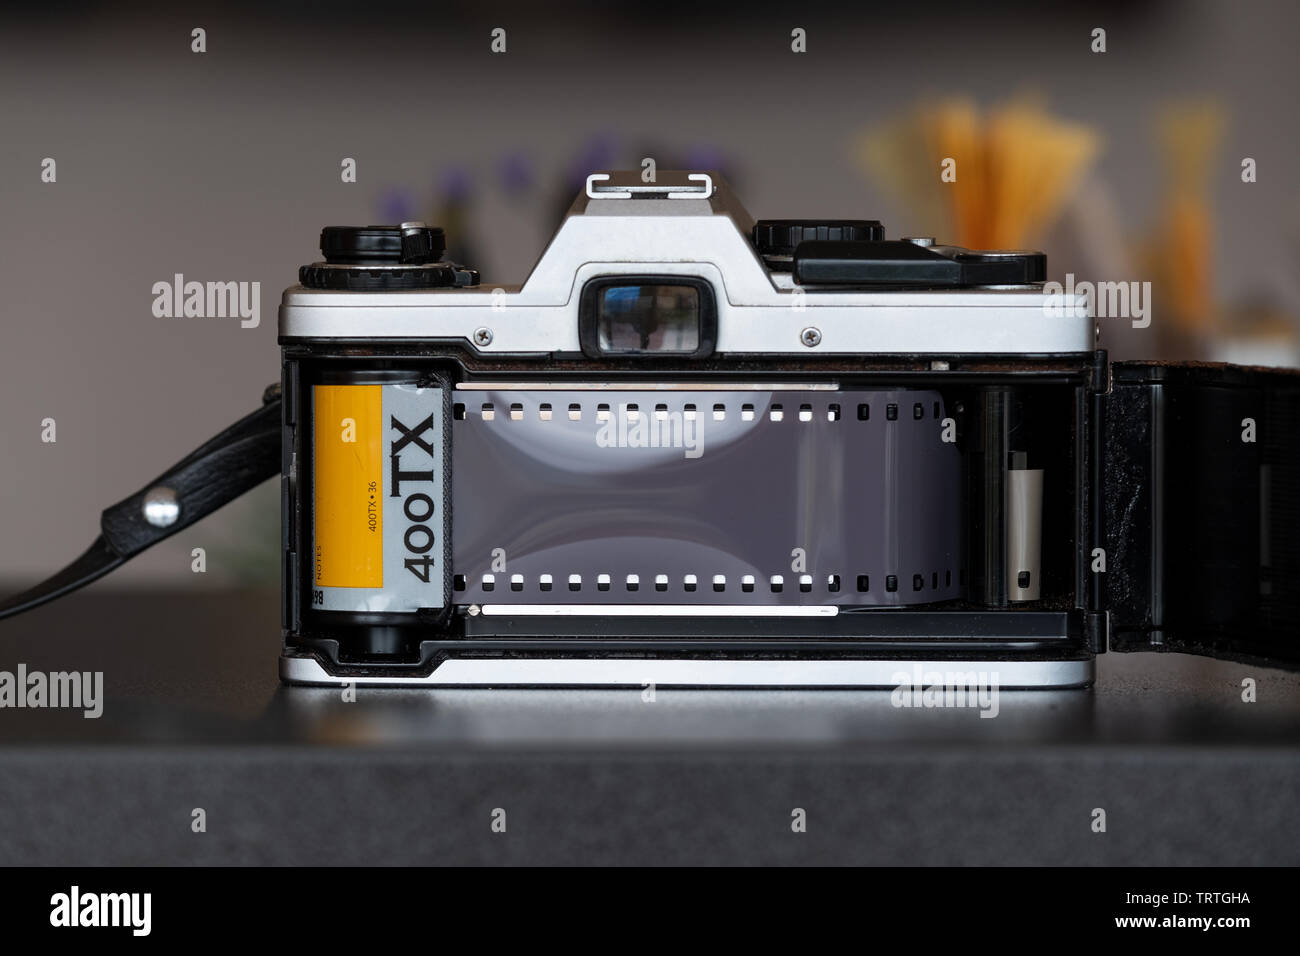 Una fotocamera reflex a obiettivo singolo con parte posteriore aperta e dotata di un nuovo rotolo di pellicola professionale in bianco e nero Kodak Tri Ex 400TX. Foto Stock